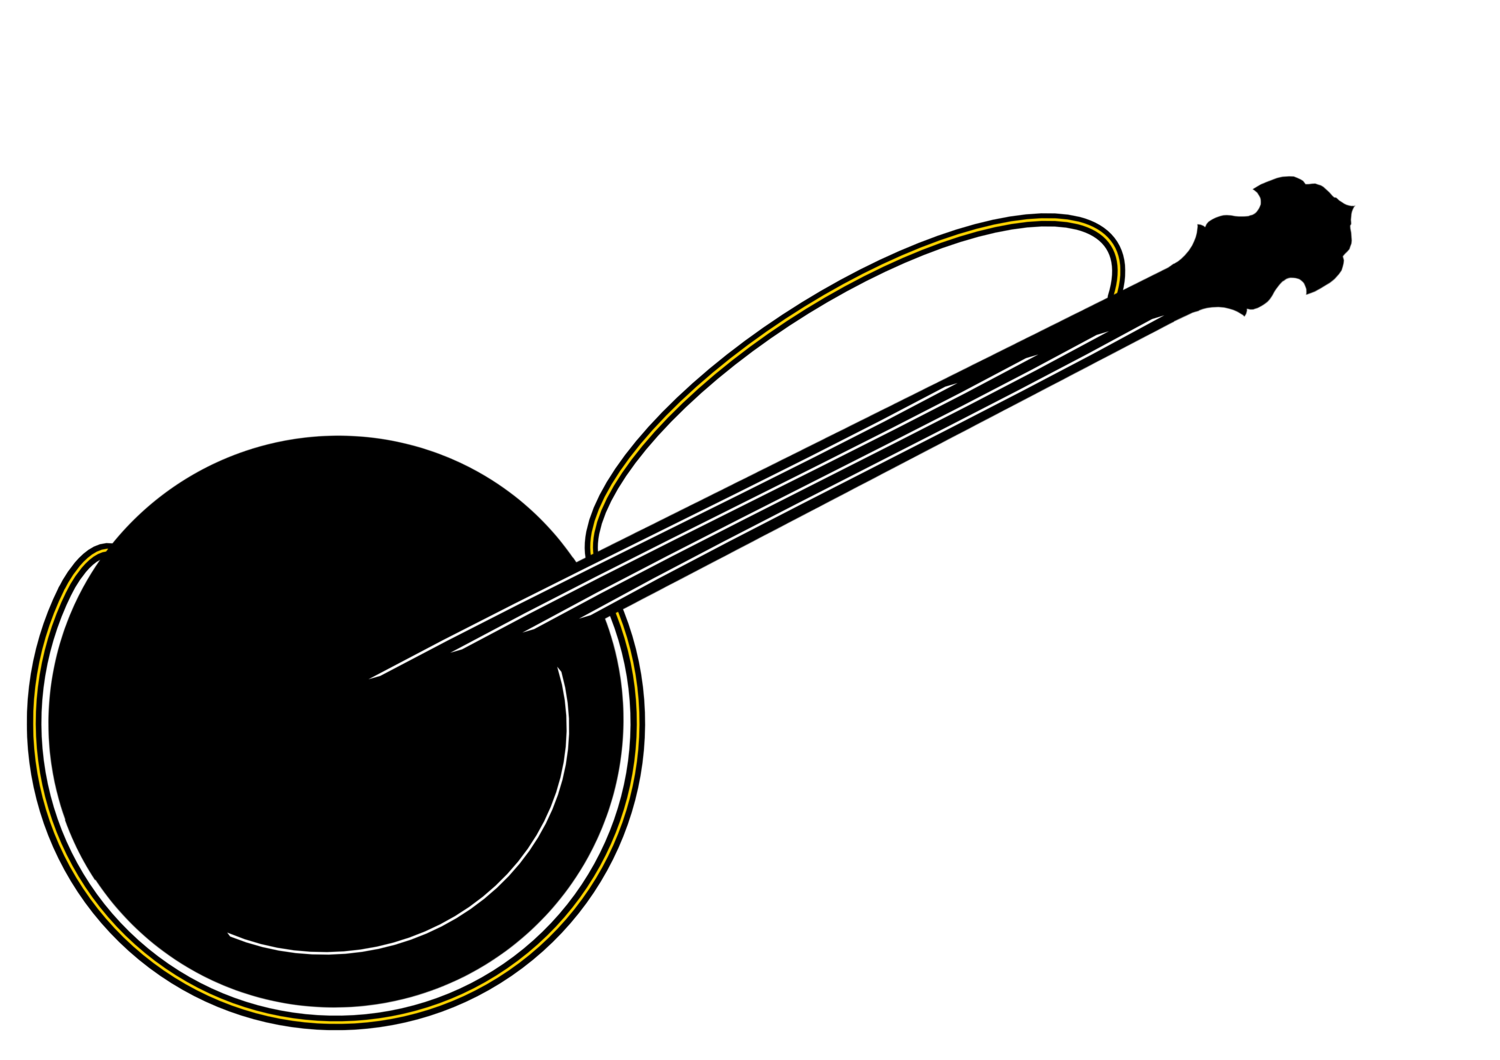 Simon Scherer - Tenor-Banjo, Mandolin, Guitar, Voice